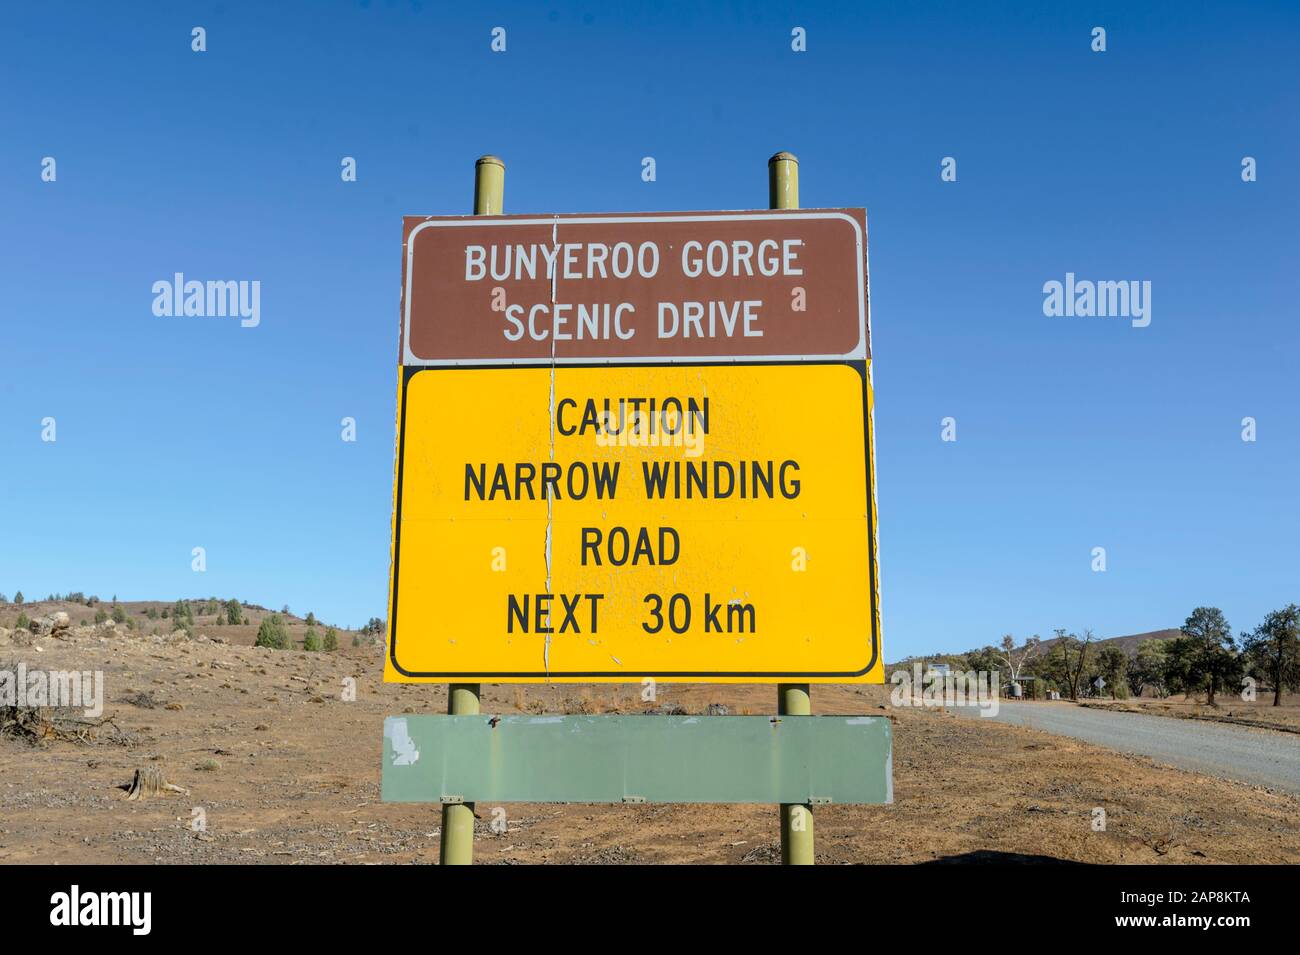 Signez Pour La Célèbre Promenade Panoramique De Bunyeero Gorge, Le Parc National Ikara-Flinders Ranges, Australie Méridionale, Australie Banque D'Images